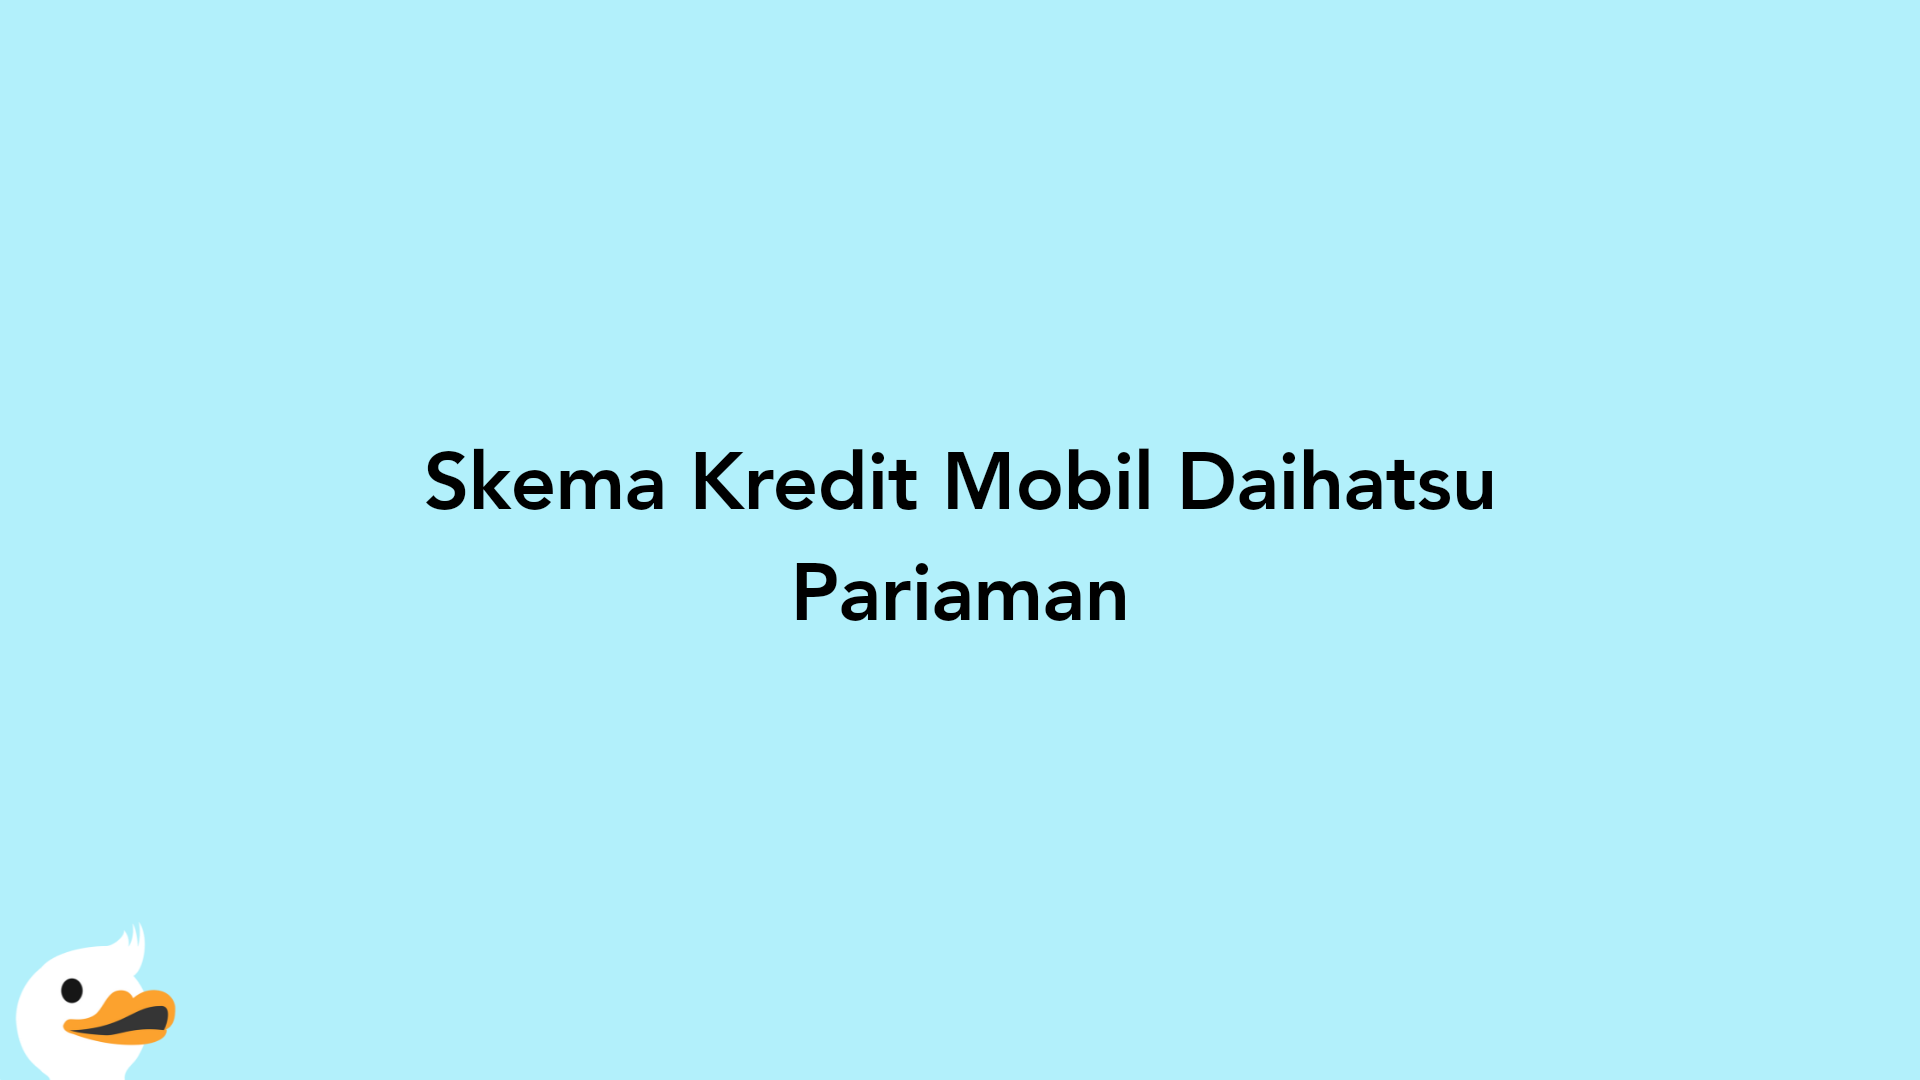 Skema Kredit Mobil Daihatsu Pariaman